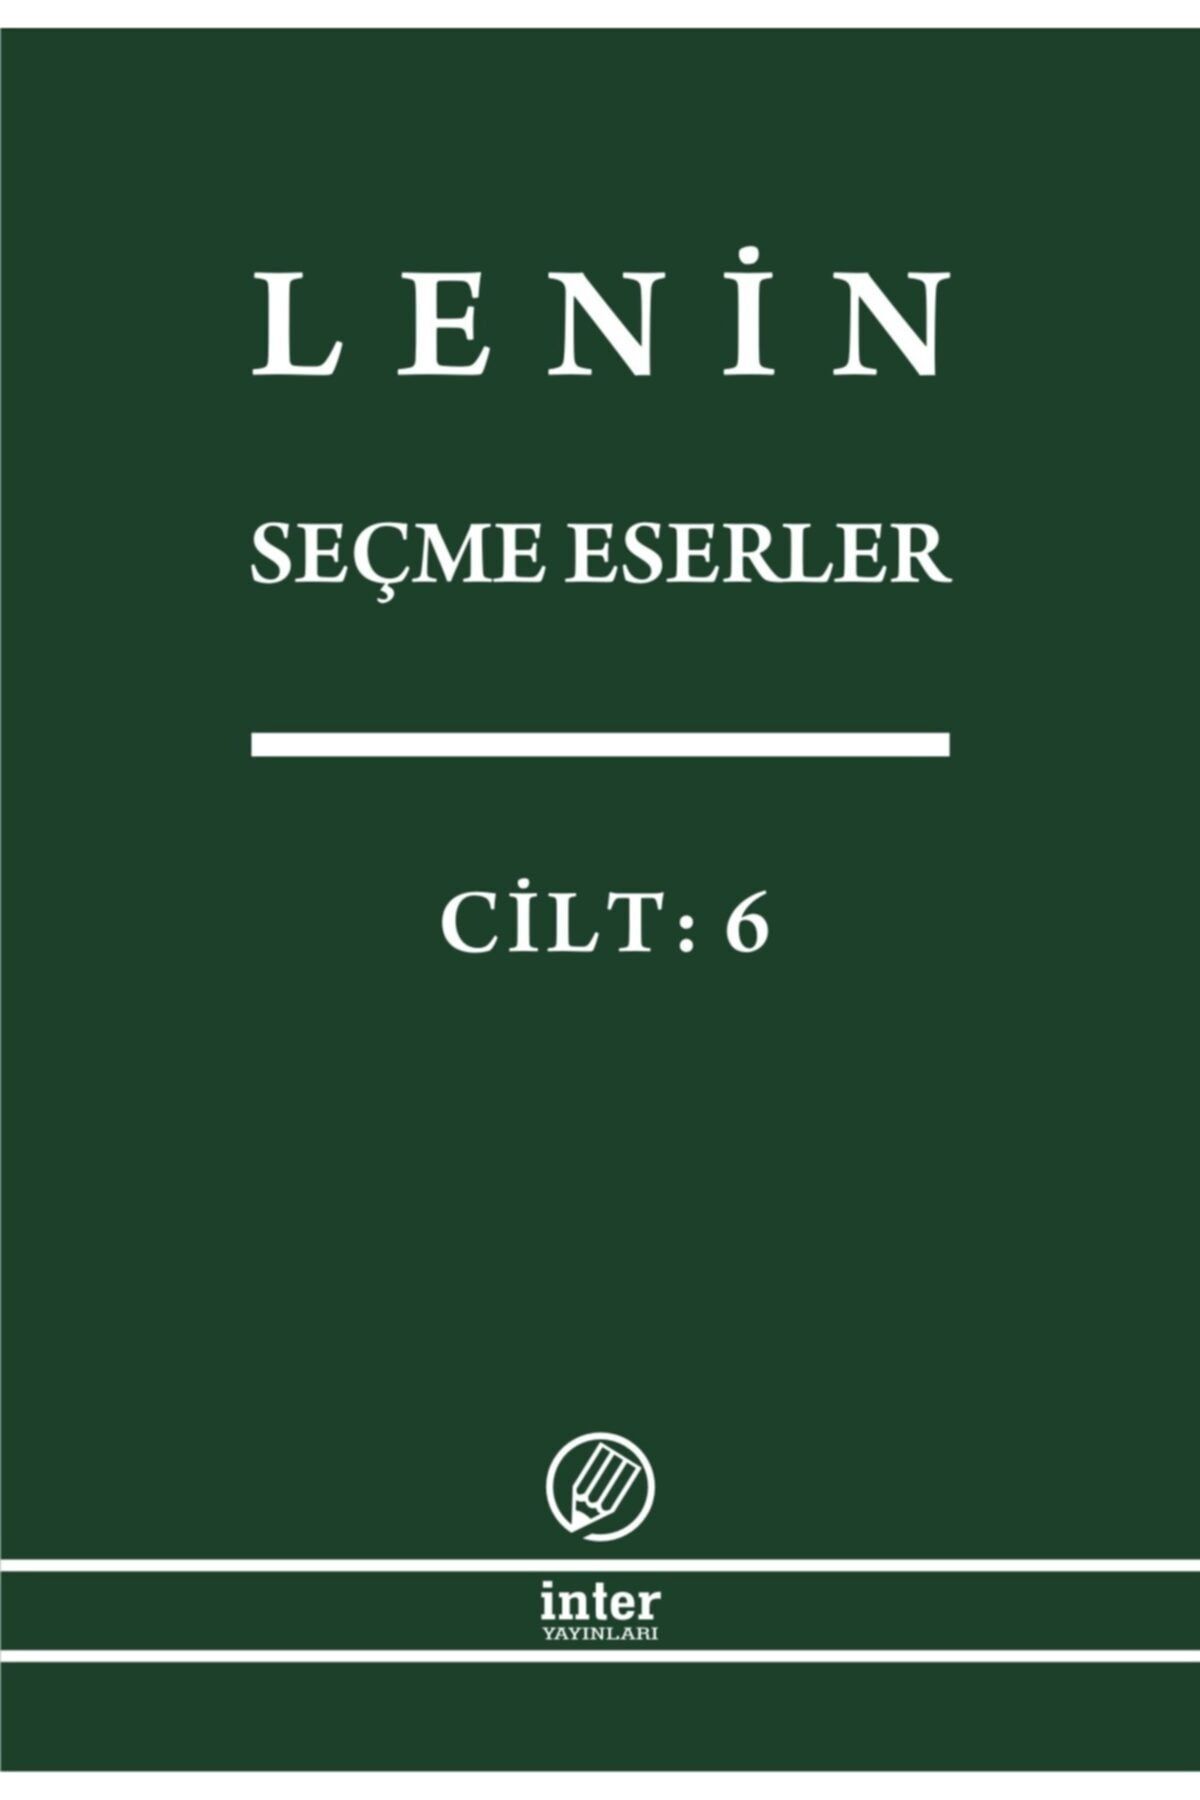 İnter Yayınları Lenin Seçme Eserler Cilt 6